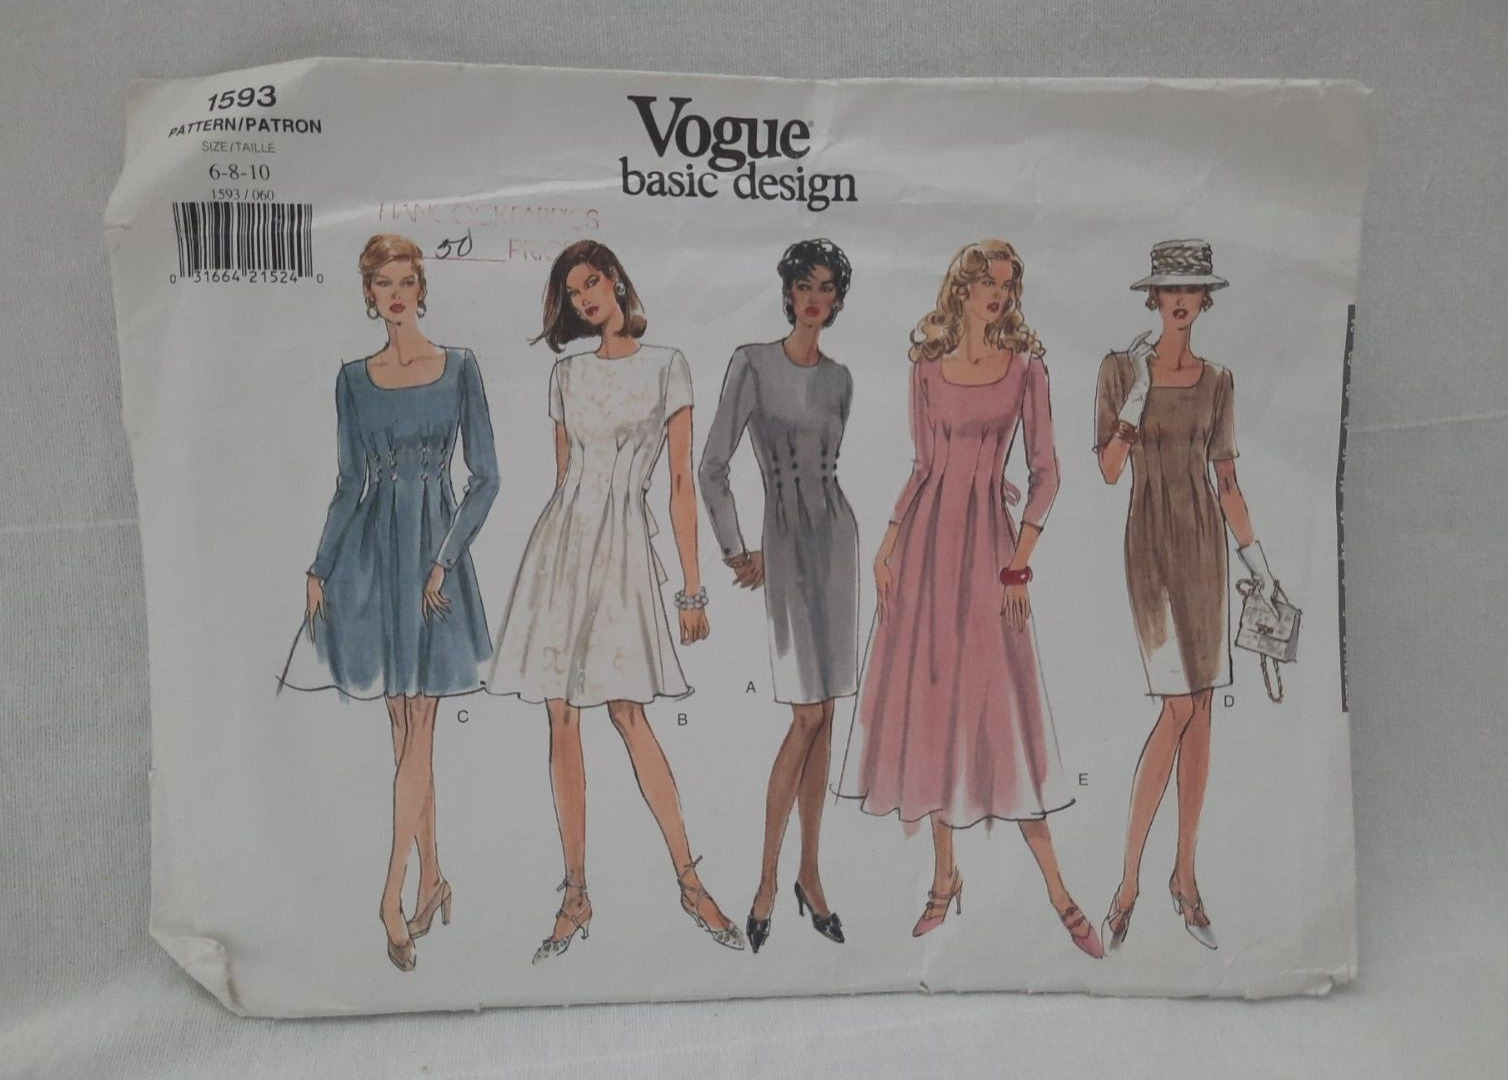 Vogue 1593 Basic Design Easy Misses\' Feminine Dress ~5 Versions ~ Sizes 6-8-10